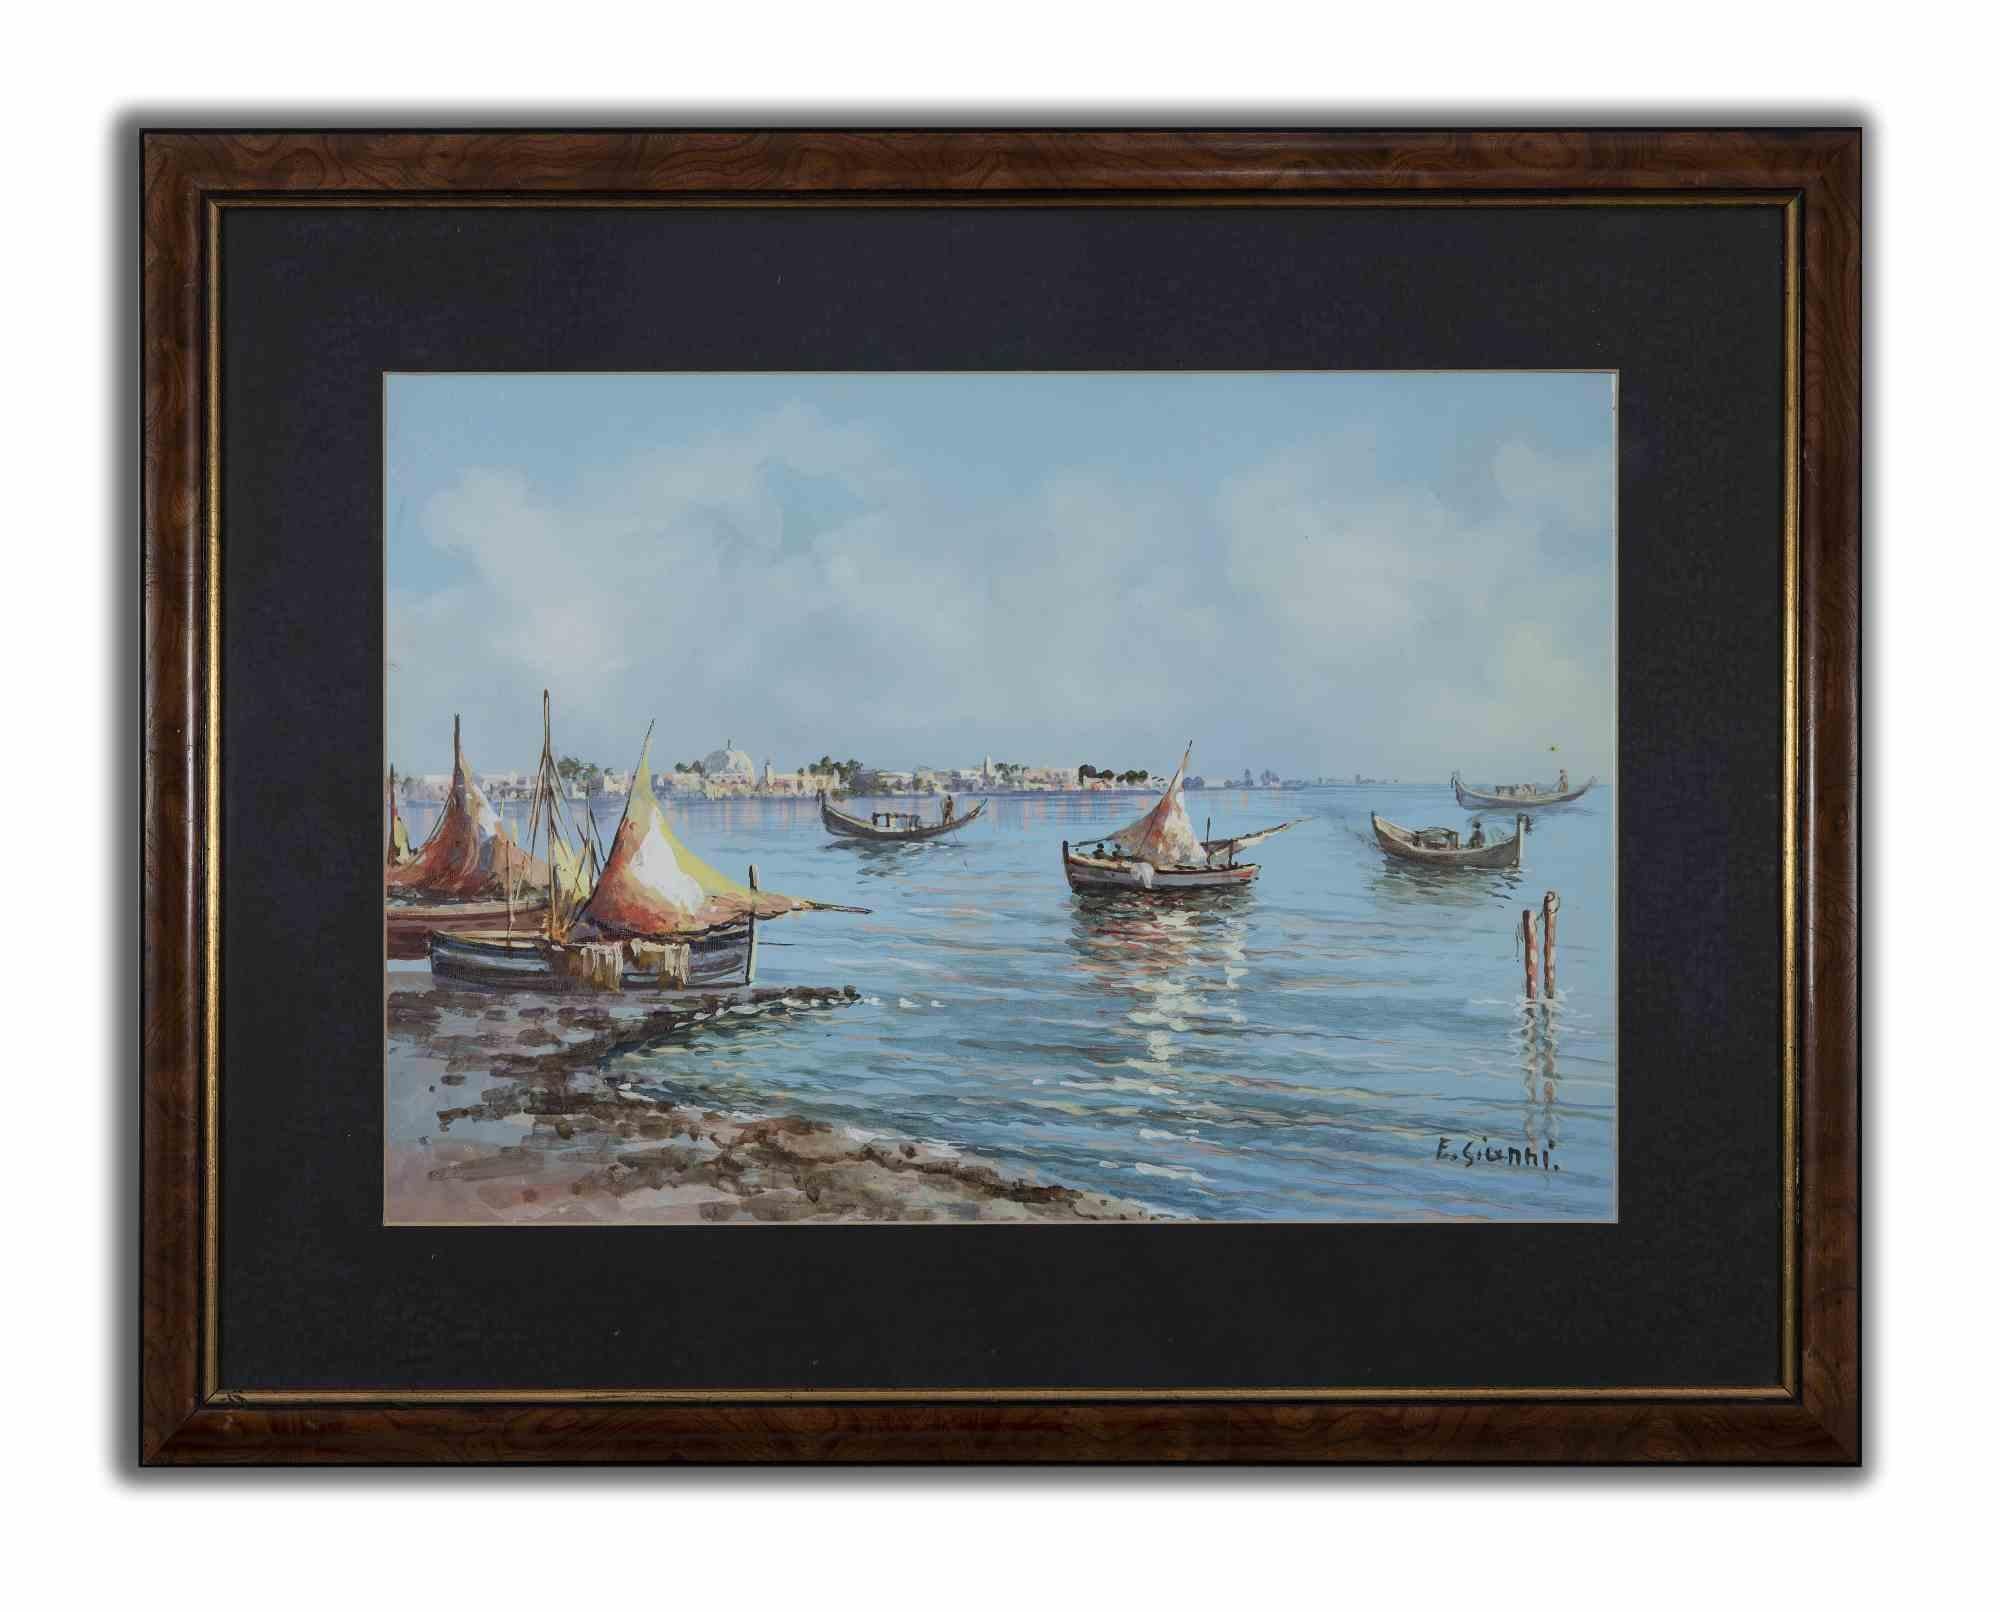 Boote im Meer ist ein originelles modernes Kunstwerk, das Anfang des 20. Jahrhunderts von Ettore Gianni geschaffen wurde.

Gemischte farbige Gouache auf Papier.

Handsigniert am unteren rechten Rand.

Inklusive Rahmen: 52,5 x 3 x 67,5 cm

